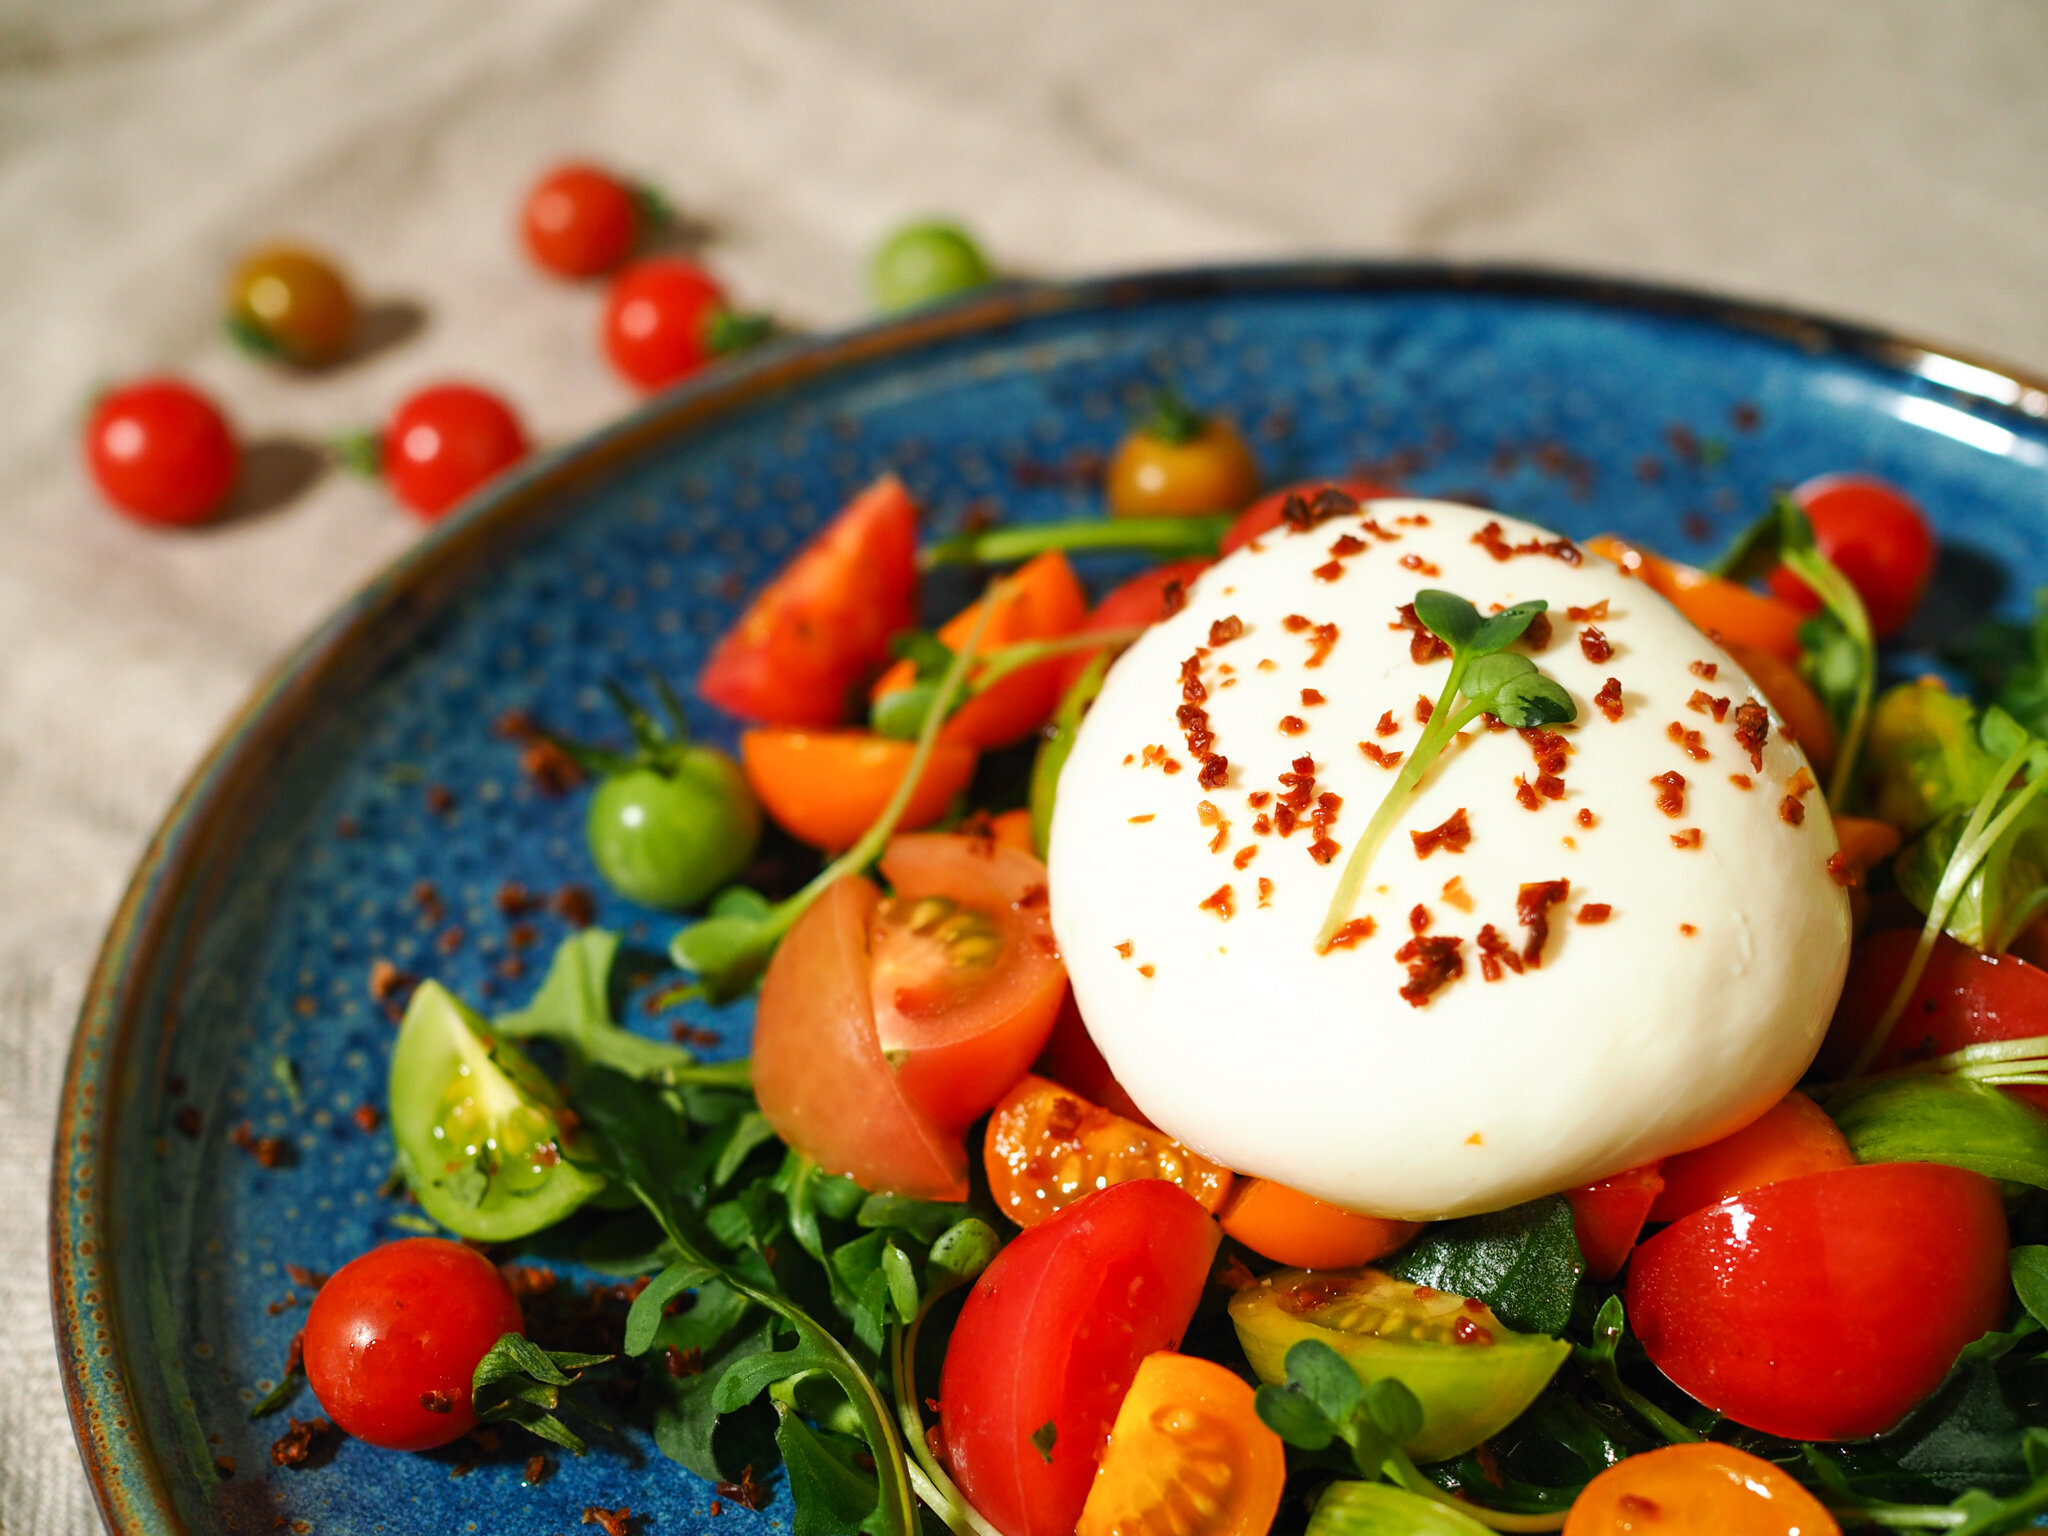 蕃茄青醬水牛芝士食譜、做法 | Kenwood Hong Kong的Cook1Cook食譜分享